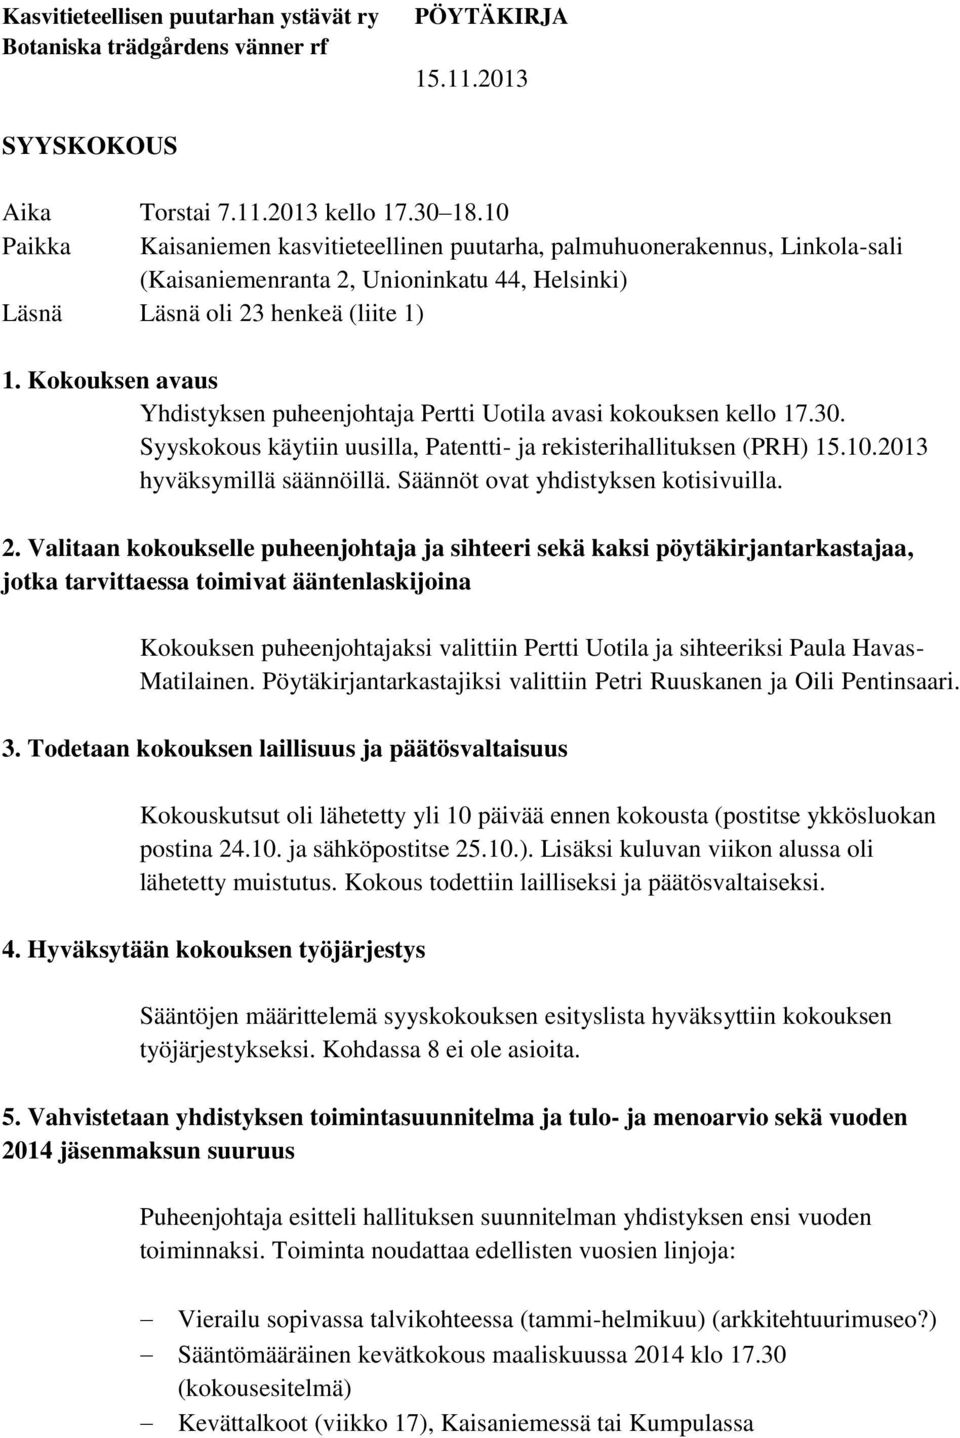 Kokouksen avaus Yhdistyksen puheenjohtaja Pertti Uotila avasi kokouksen kello 17.30. Syyskokous käytiin uusilla, Patentti- ja rekisterihallituksen (PRH) 15.10.2013 hyväksymillä säännöillä.